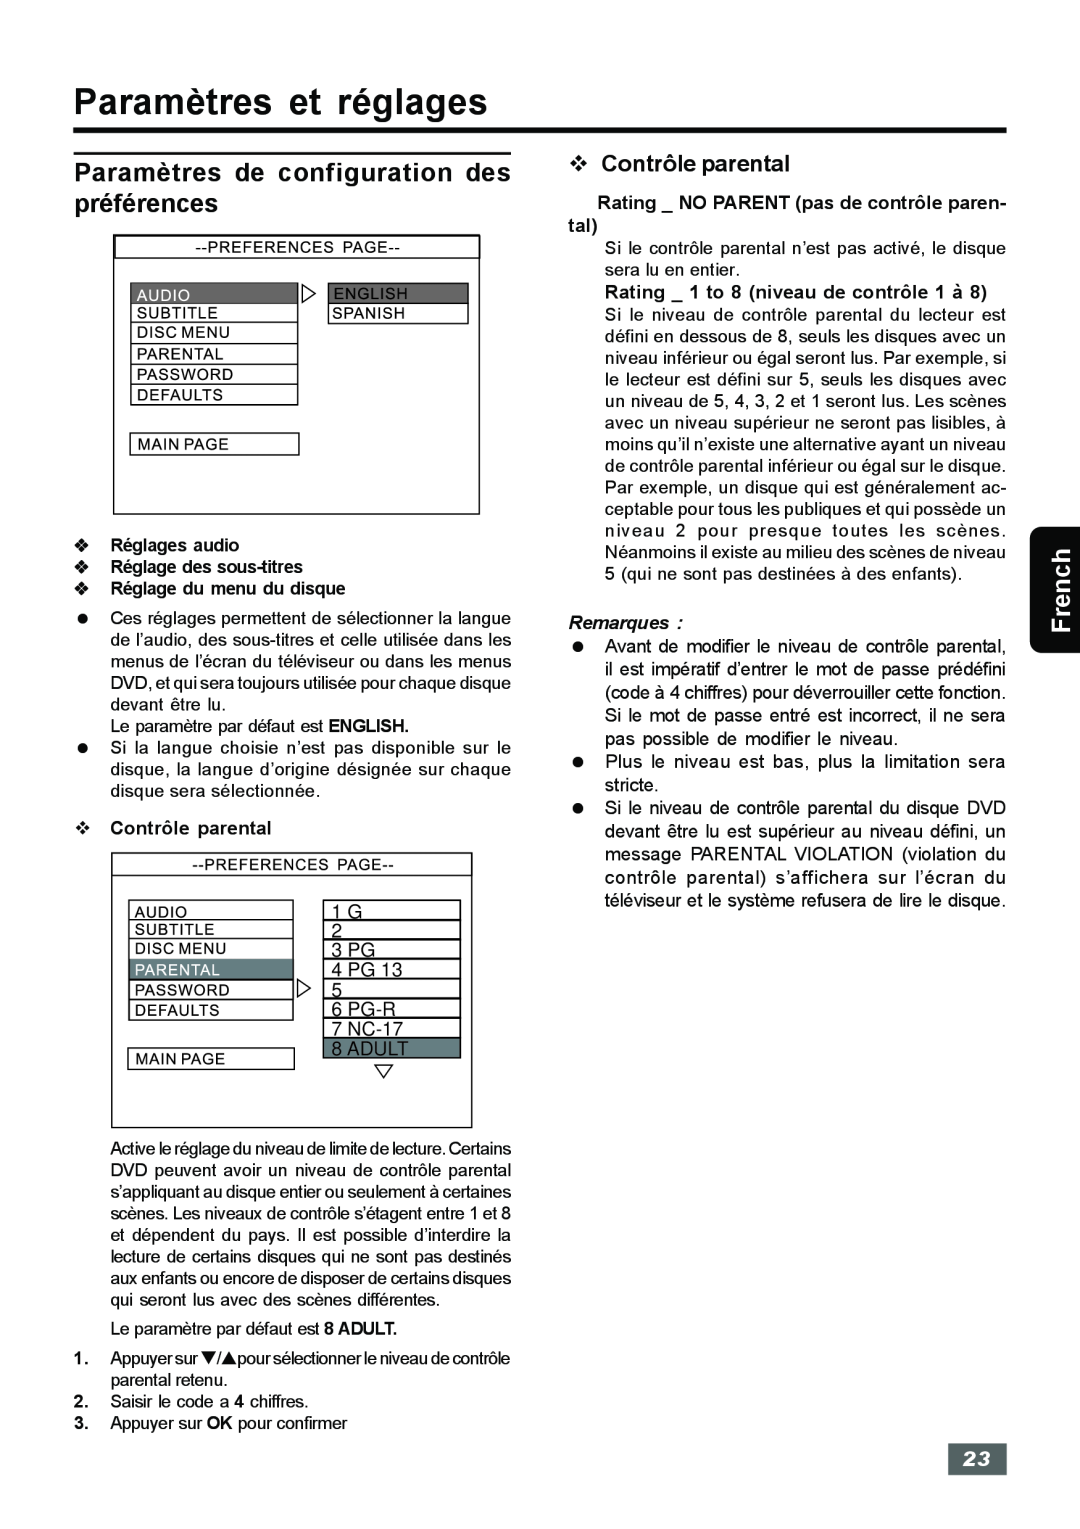 Insignia IS-HTIB102731 Paramètres de configuration des, préférences, v Contrôle parental, Paramètres et réglages, French 